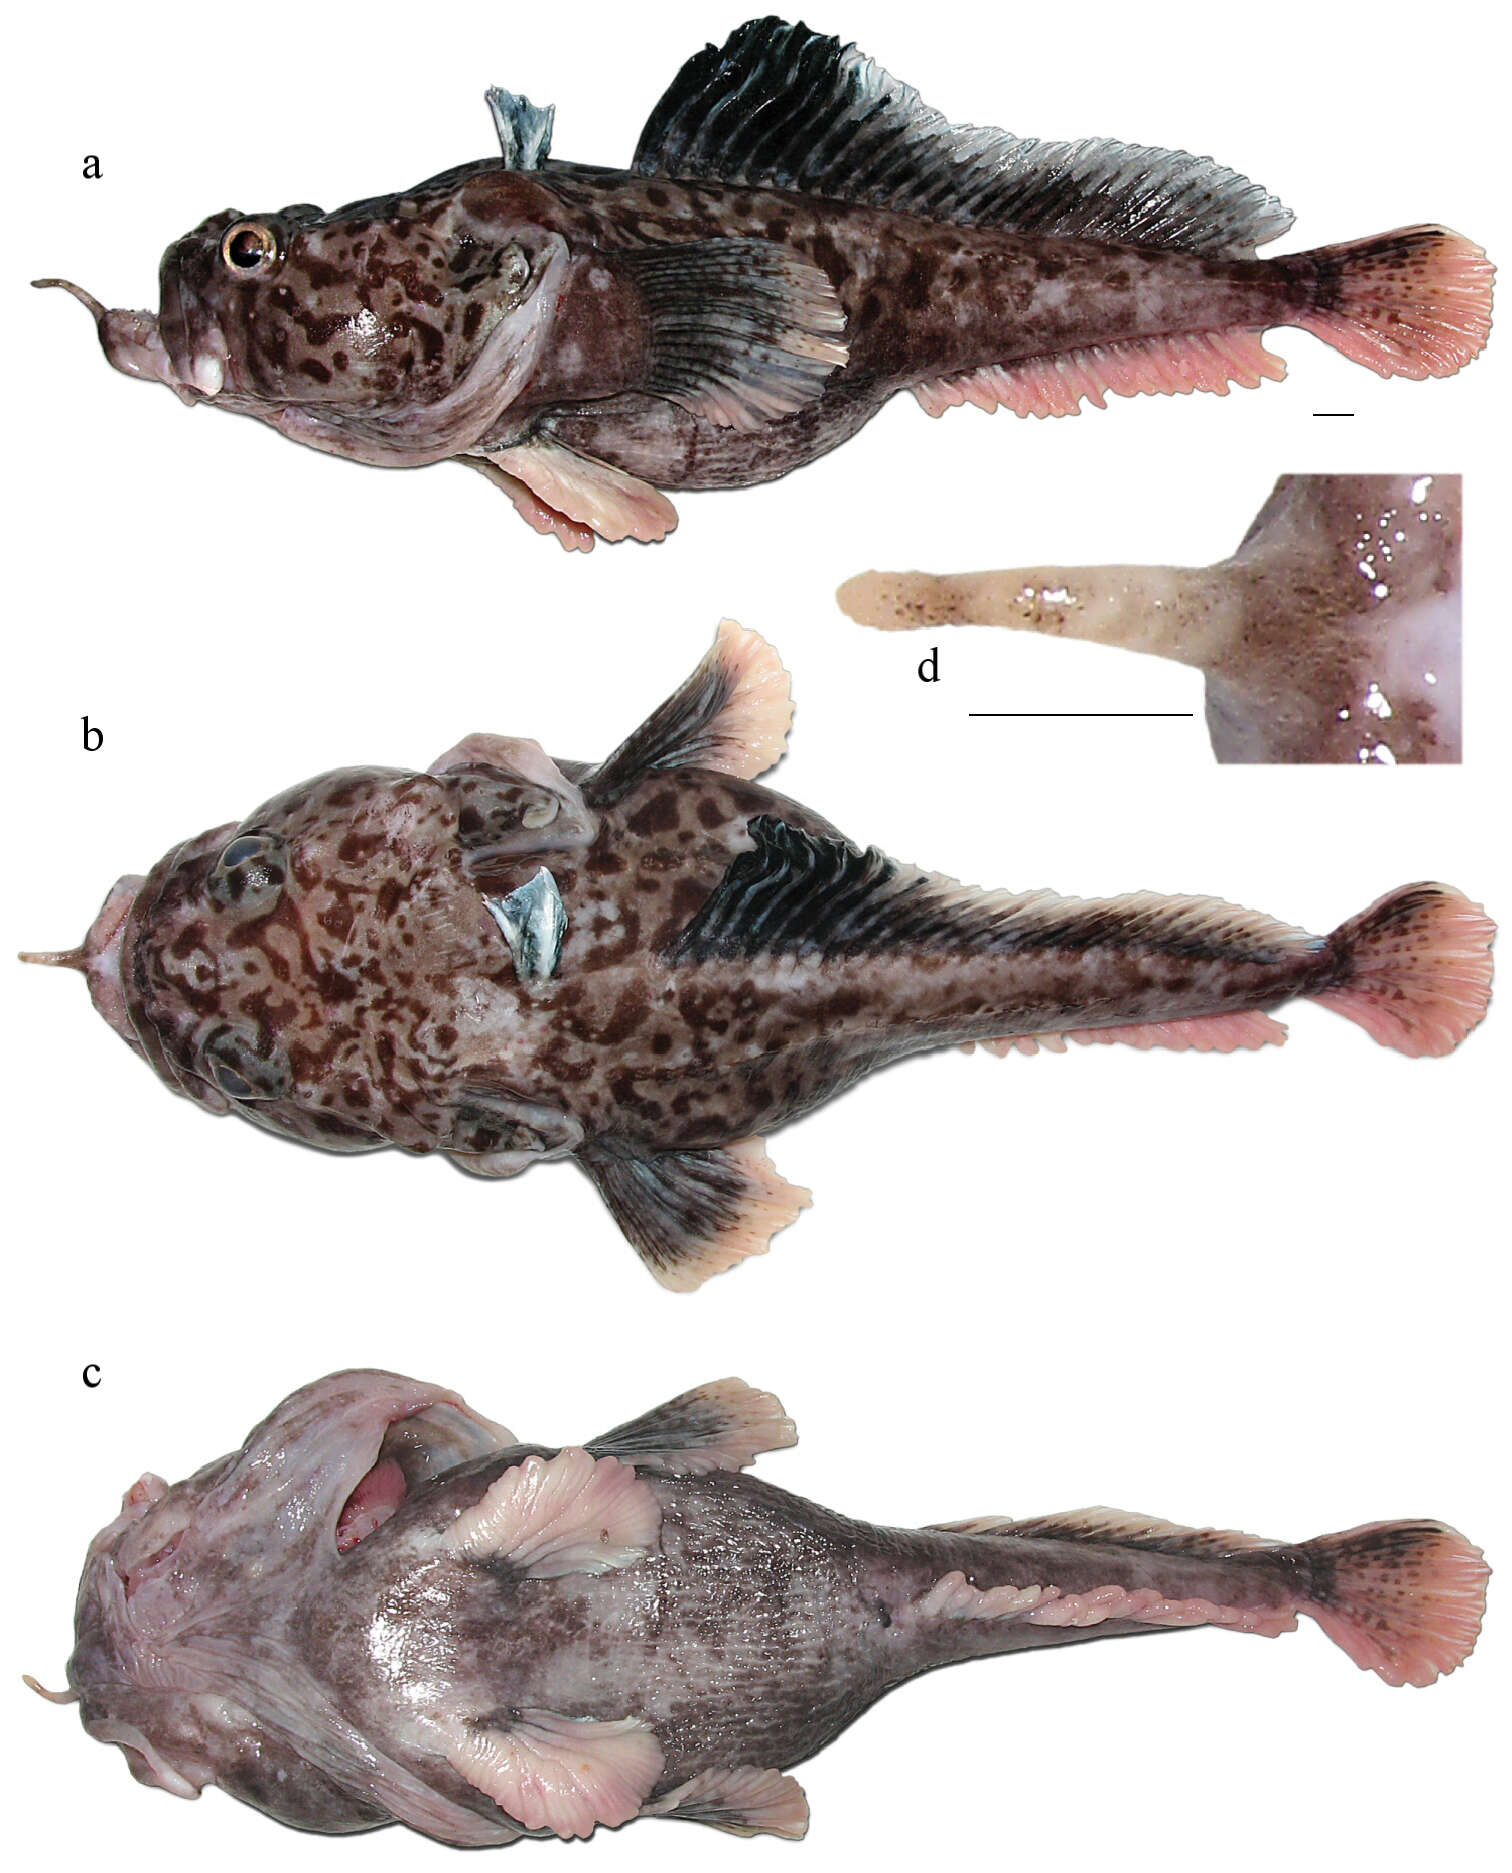 Image of Hopbeard plunderfish